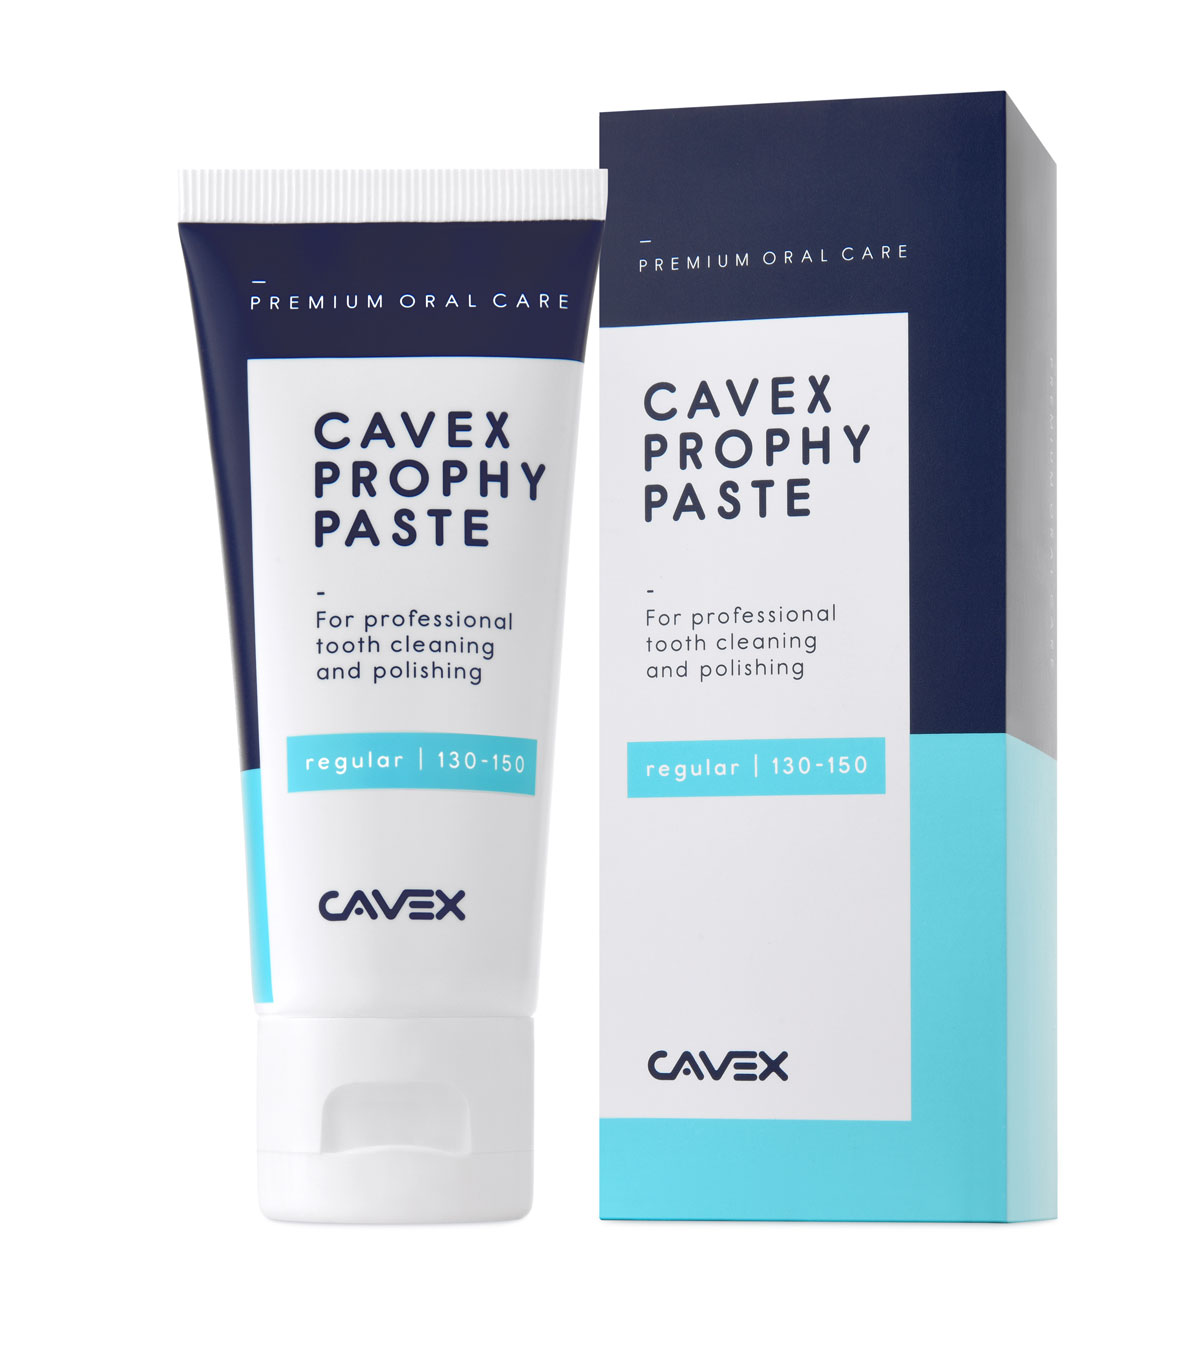 Cavex Prophy Paste Regular